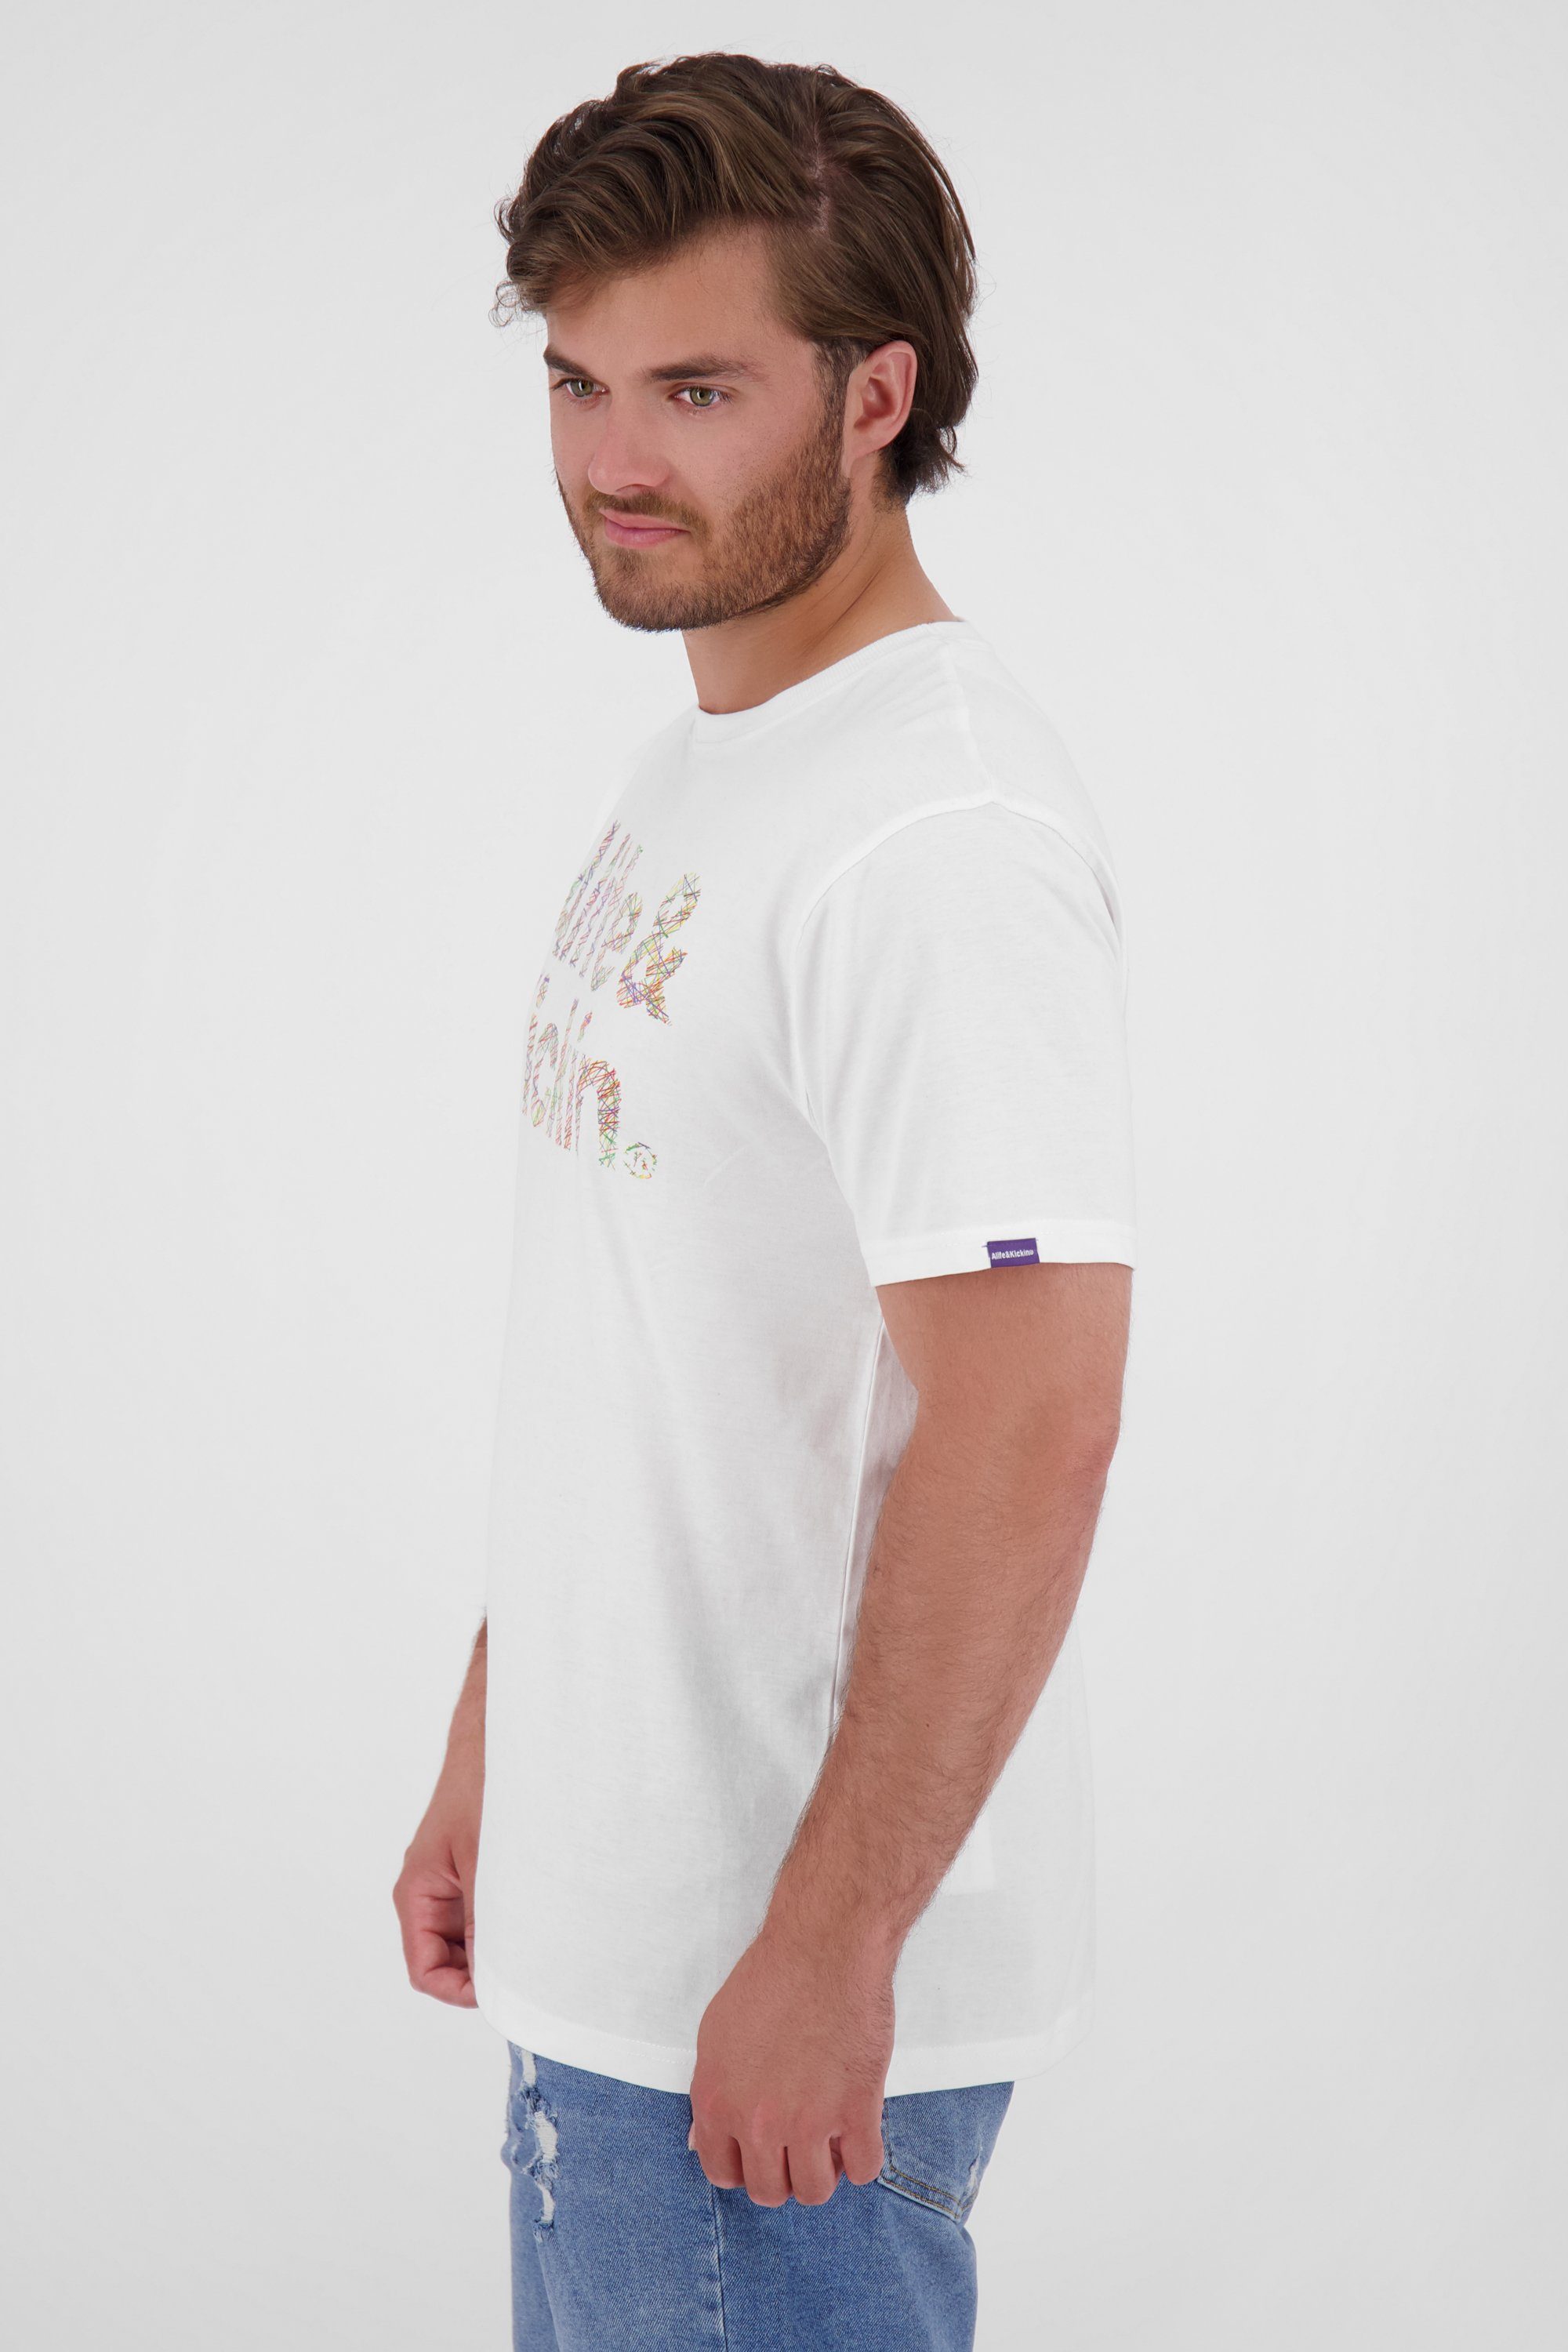 T-Shirt Herren white Alife T-Shirt Kickin Shirt Logo IconAK &